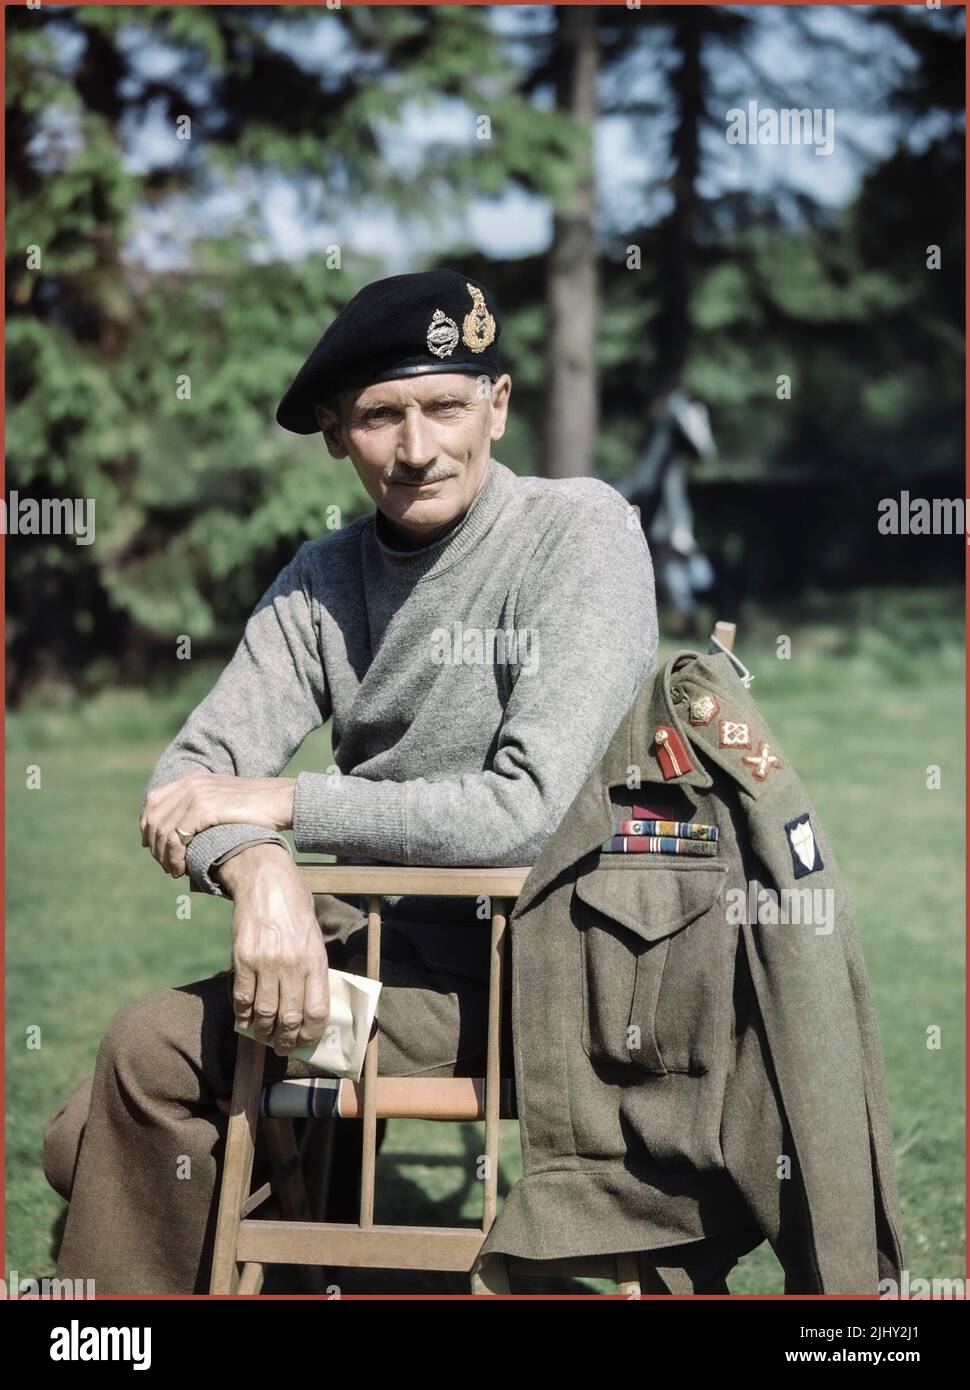 MONTGOMERY PORTRAIT UNIFORME WW2 Portrait du commandant de la huitième armée britannique, le général Sir Bernard Montgomery, portant son 'pull de combat' et son béret de char, au Royaume-Uni, 1943. Deuxième Guerre mondiale deuxième Guerre mondiale Banque D'Images